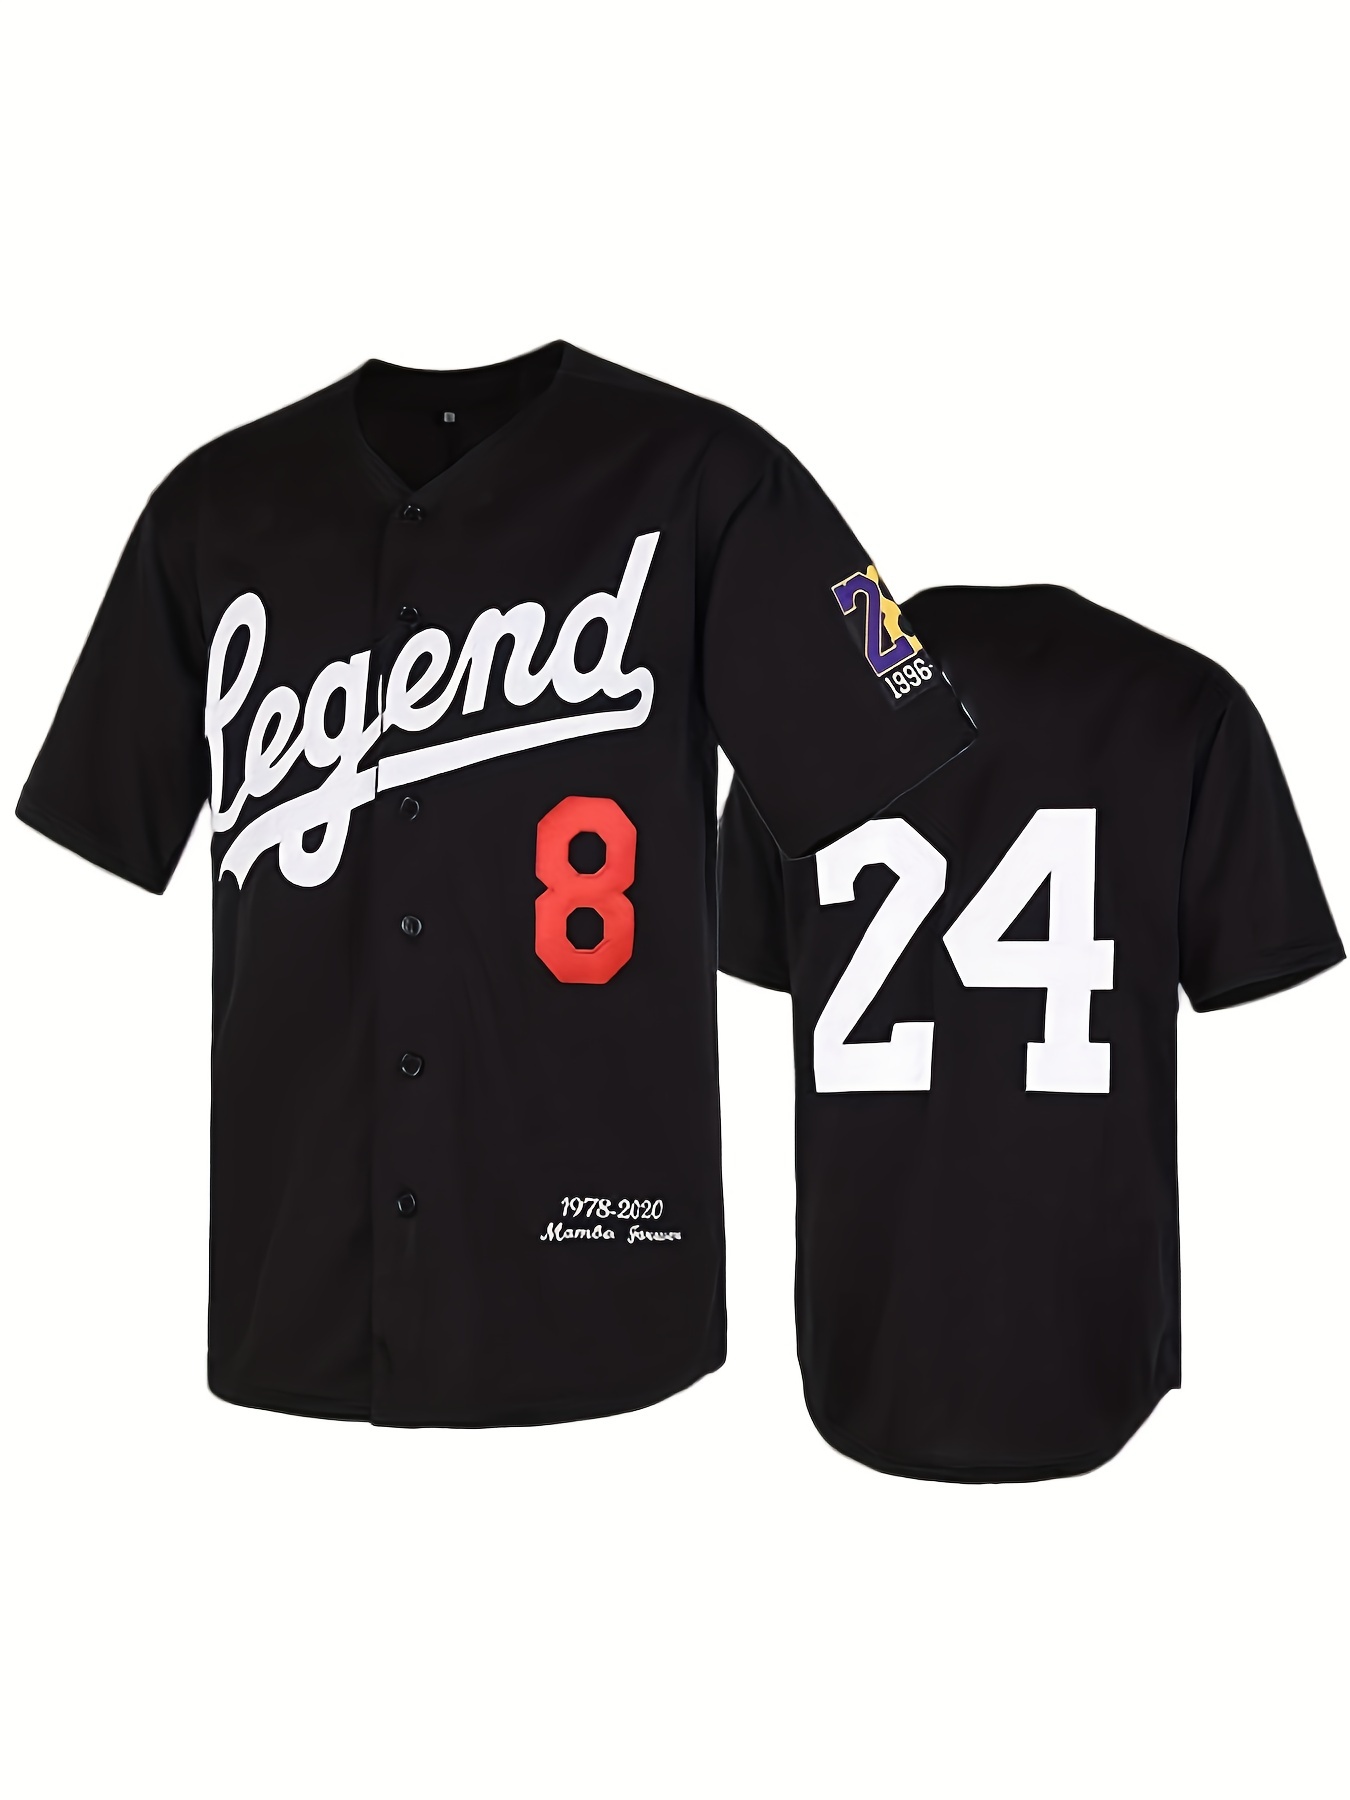 Black Mamba Baseball Jerseys Legend 8 24 Mamba Jersey Outdoor Sportswear